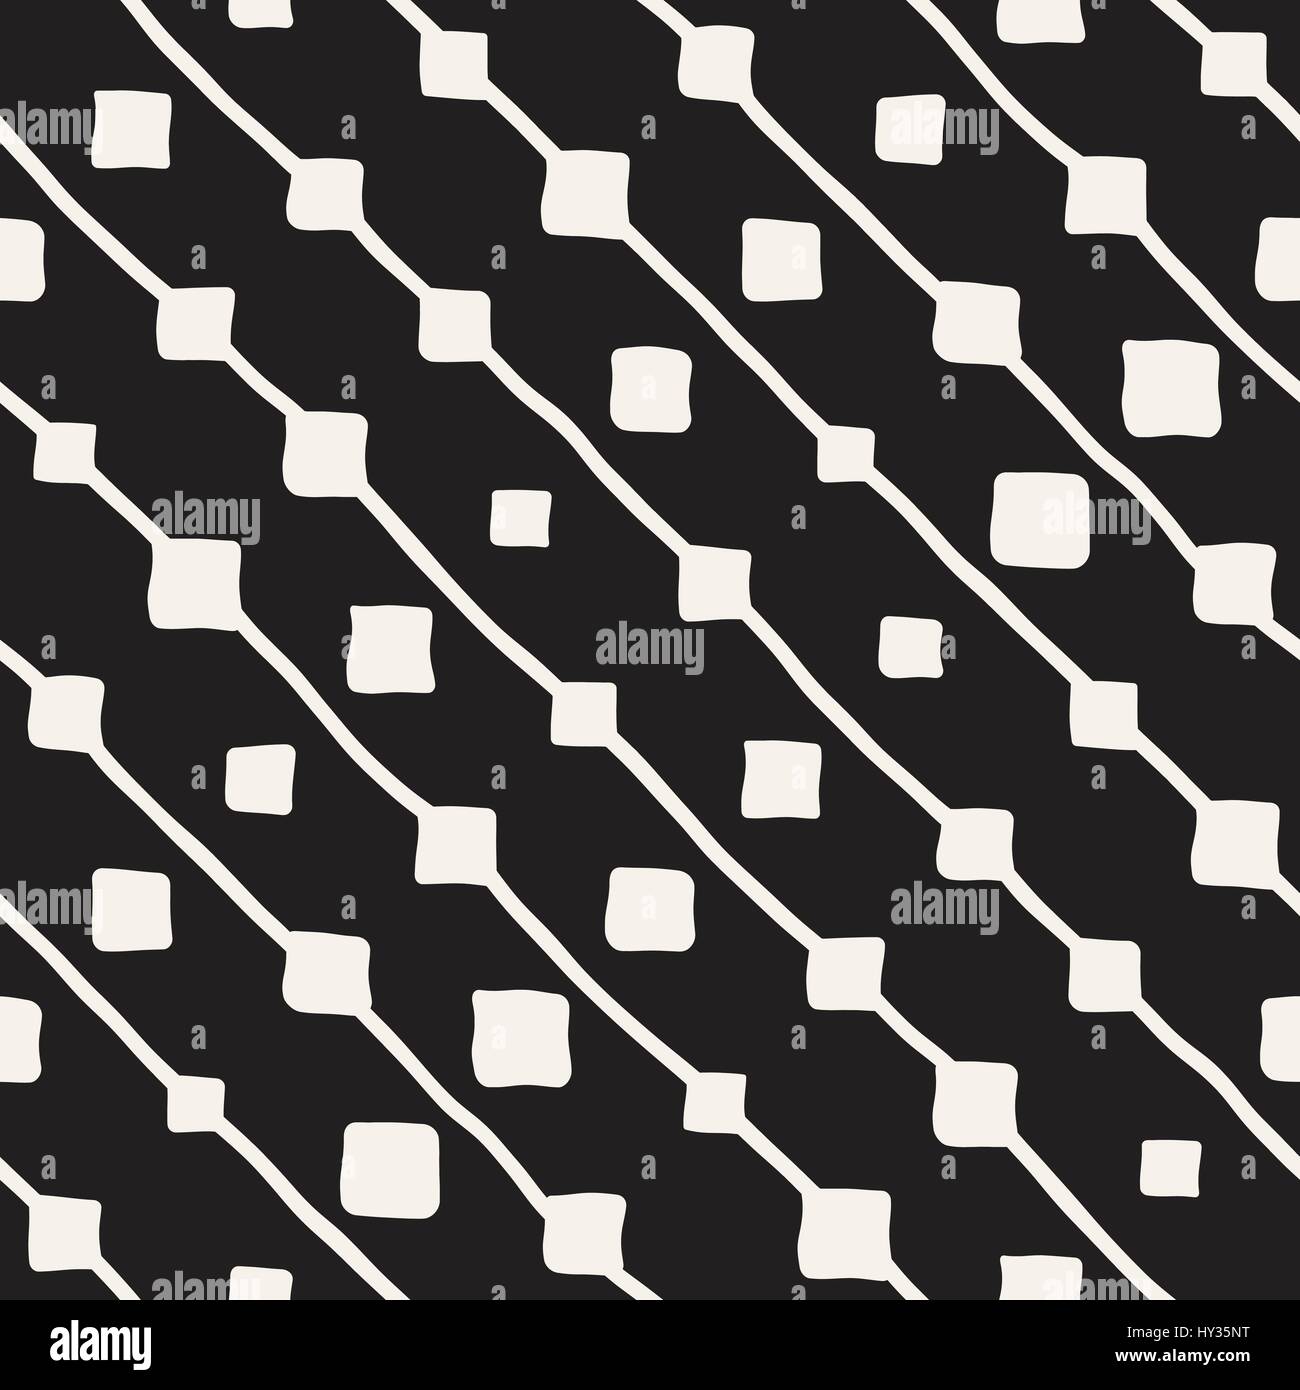 Kindliche Musterdesign Vektor. Monochrome handgezeichnete geometrische Formen Textur Stock Vektor